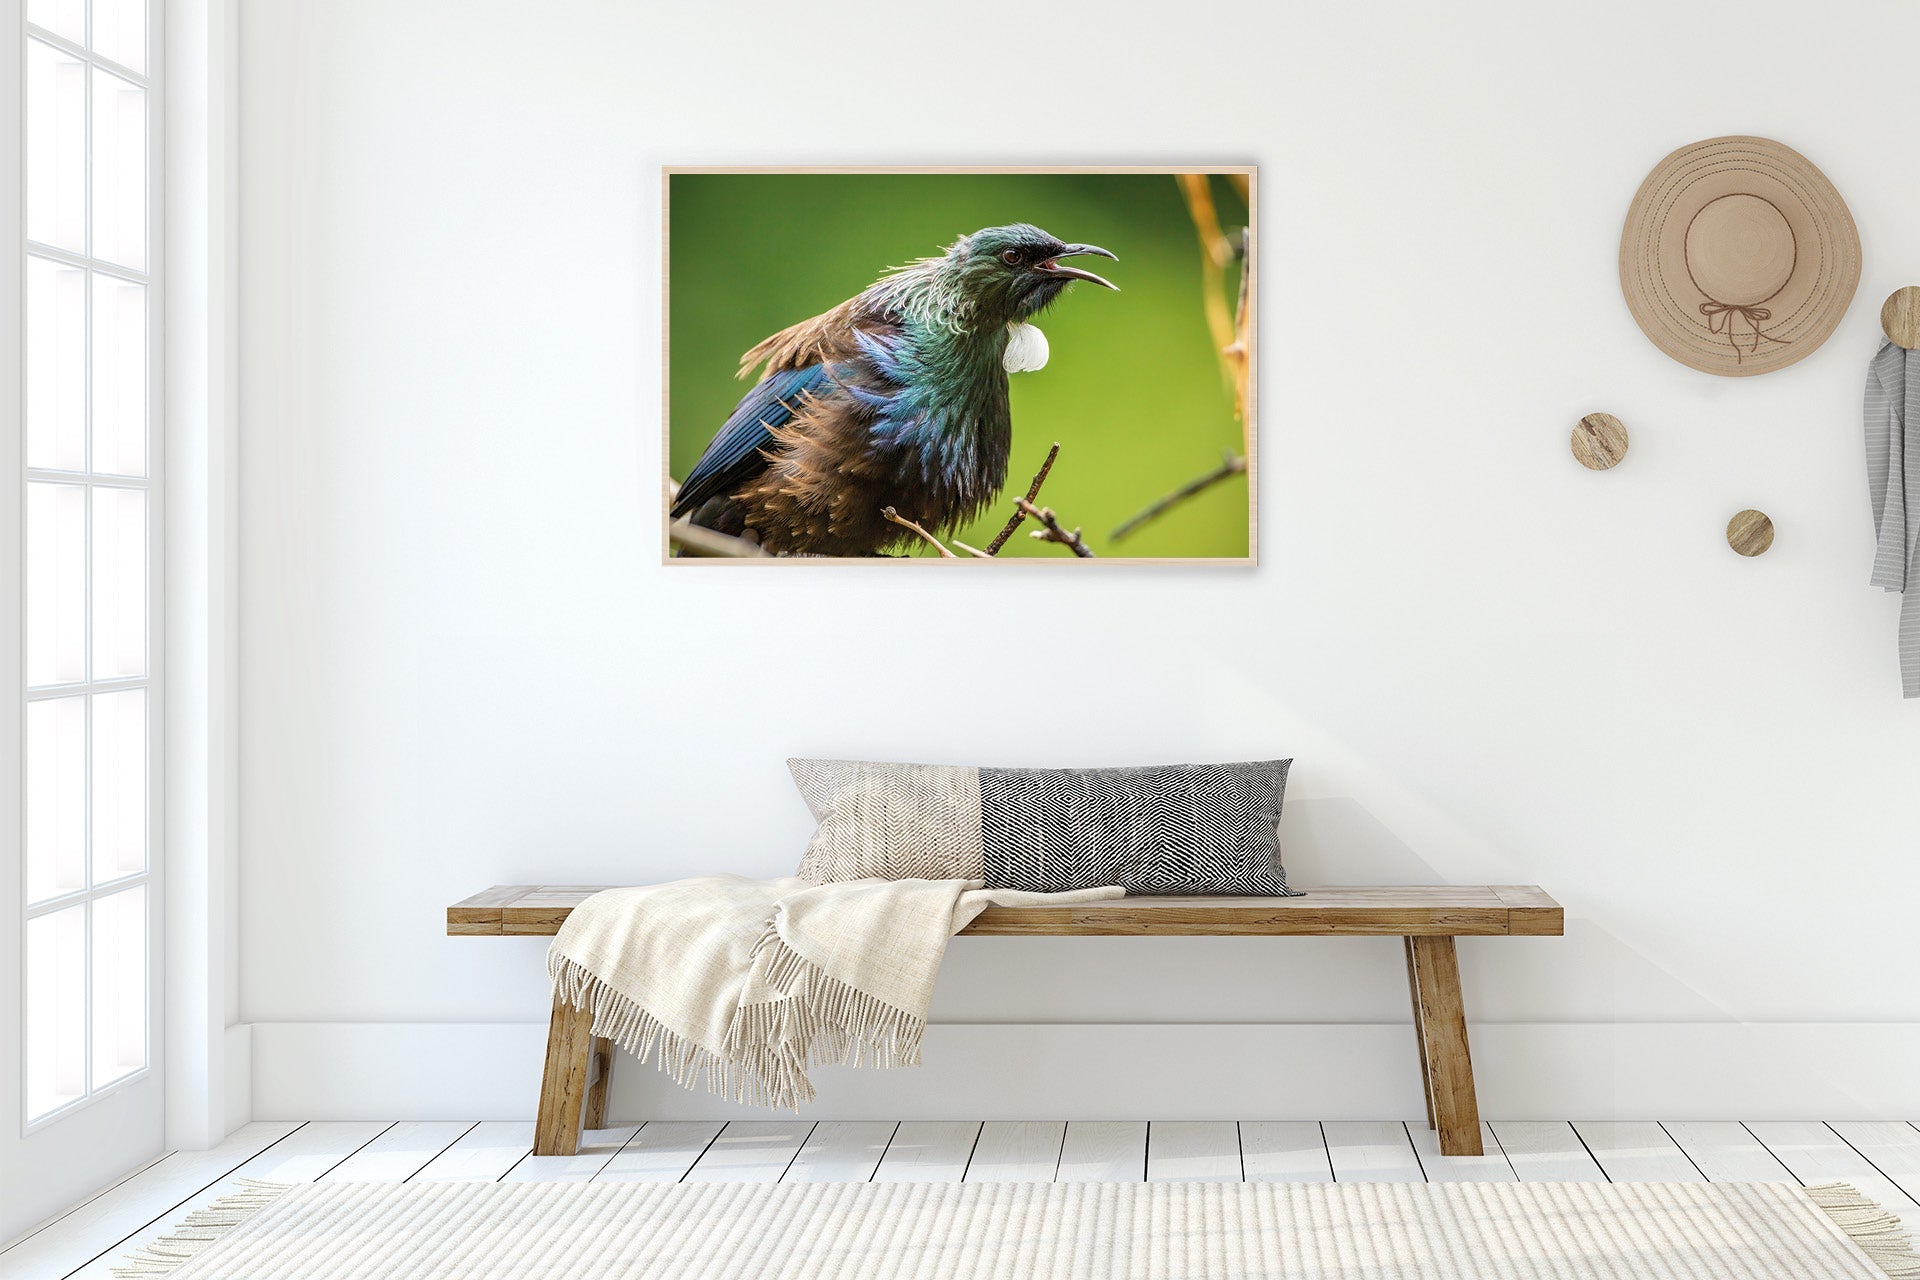 New Zealand native bird photo images